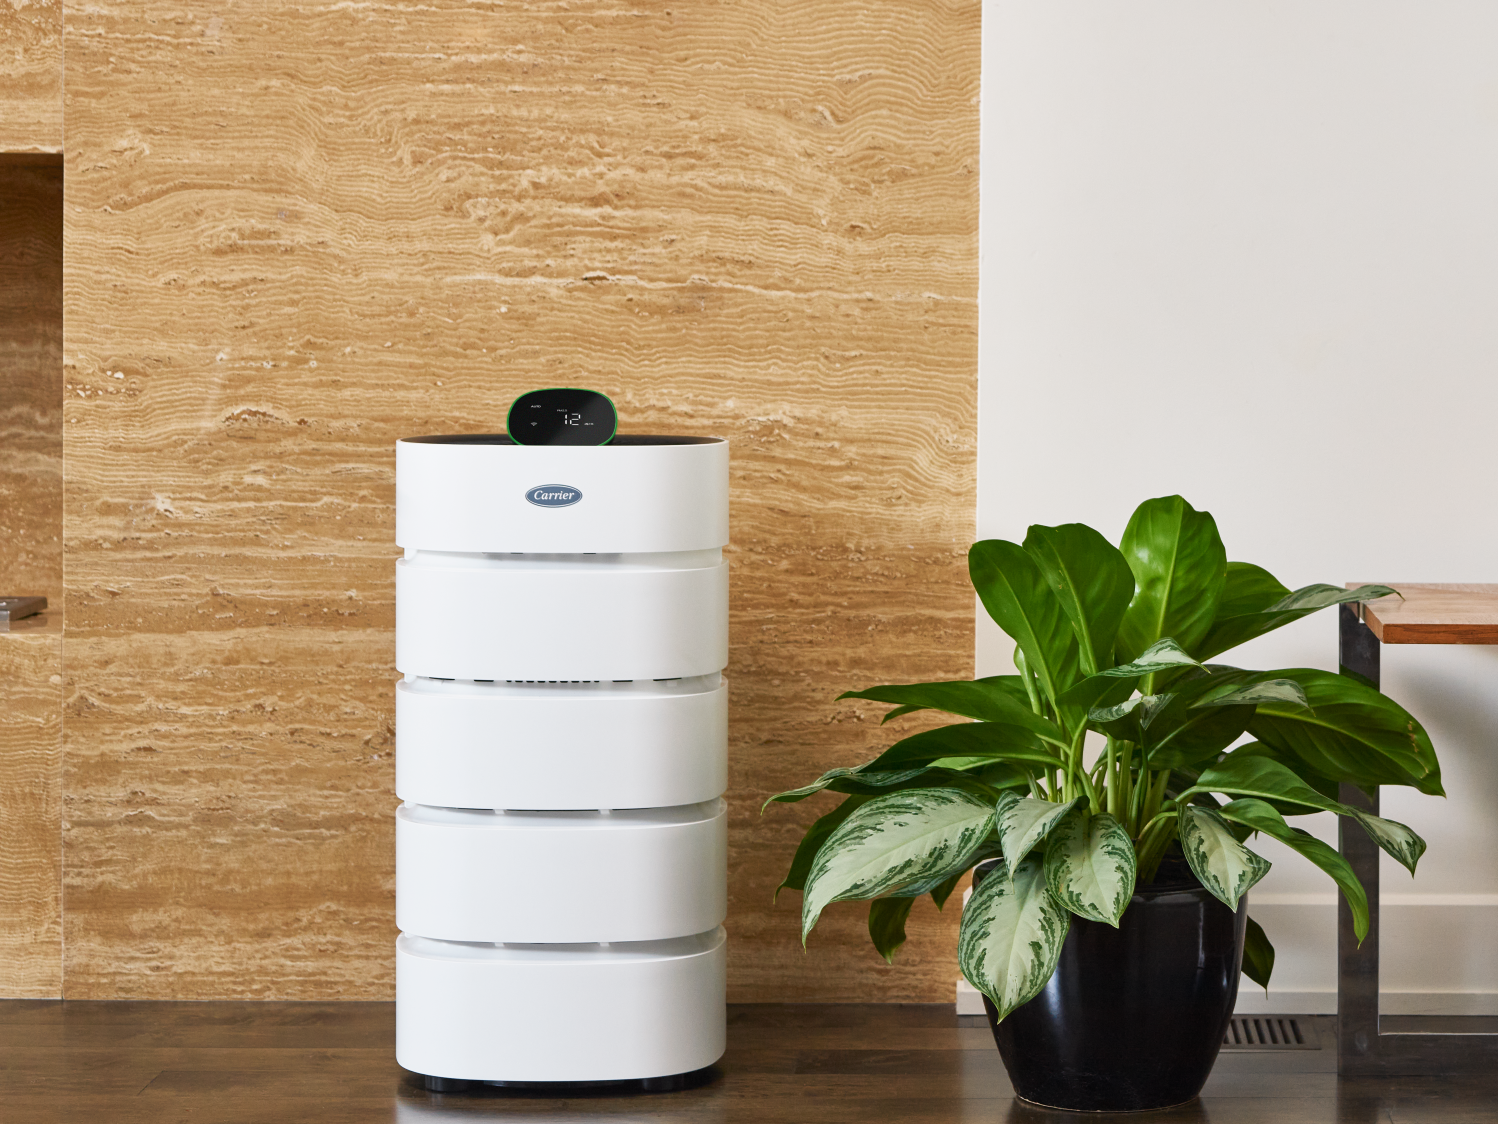 Air purifier in a modern setting